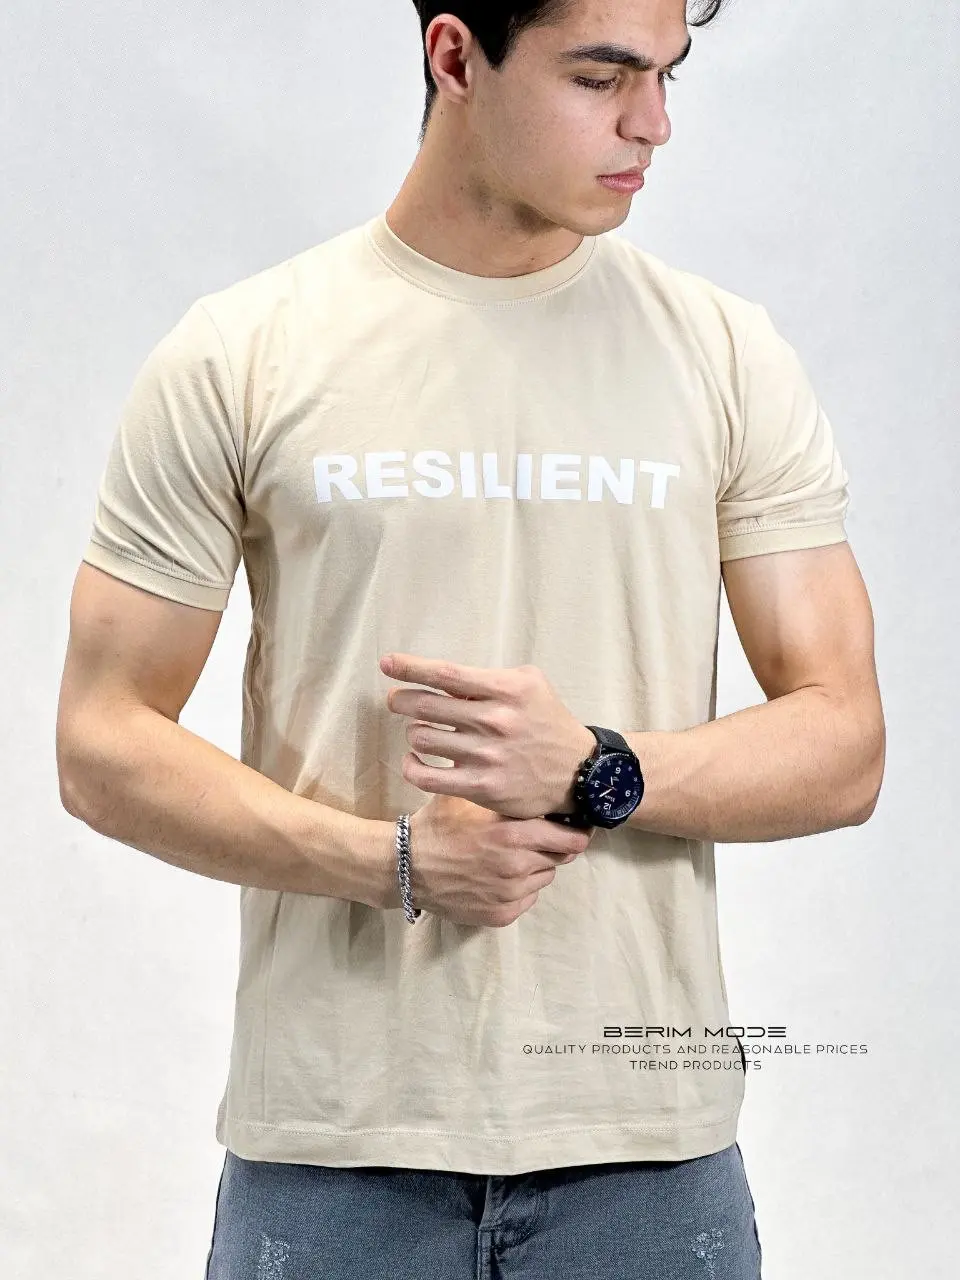 تیشرت مردانه طرح Resilient